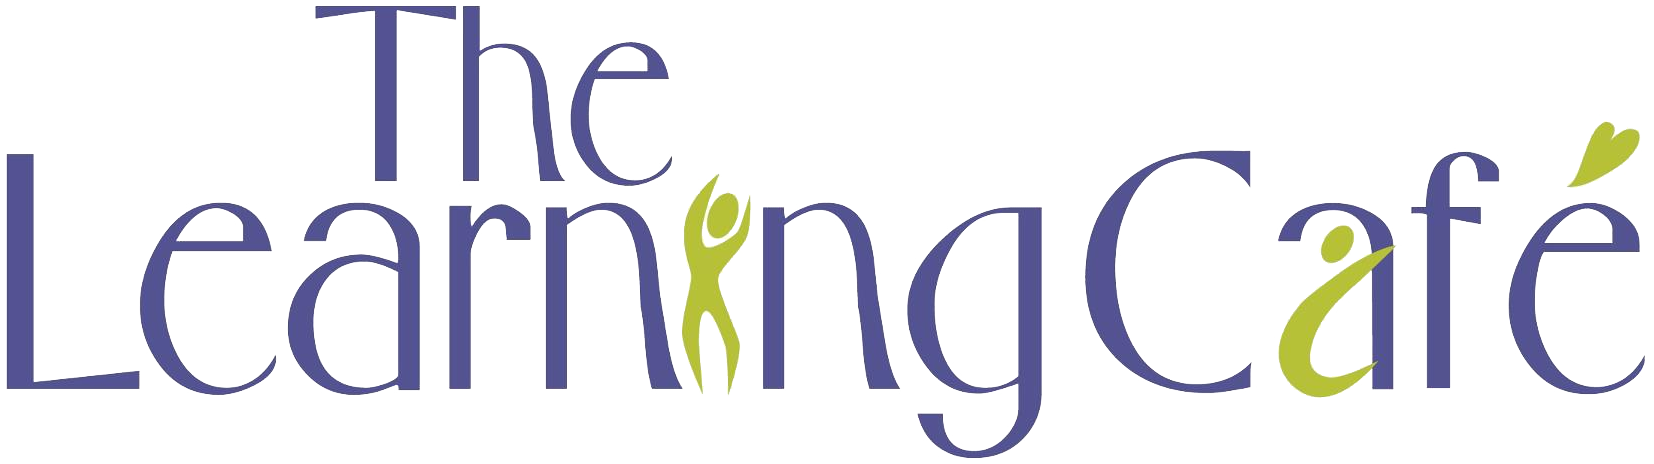 Learning Cafe Logo